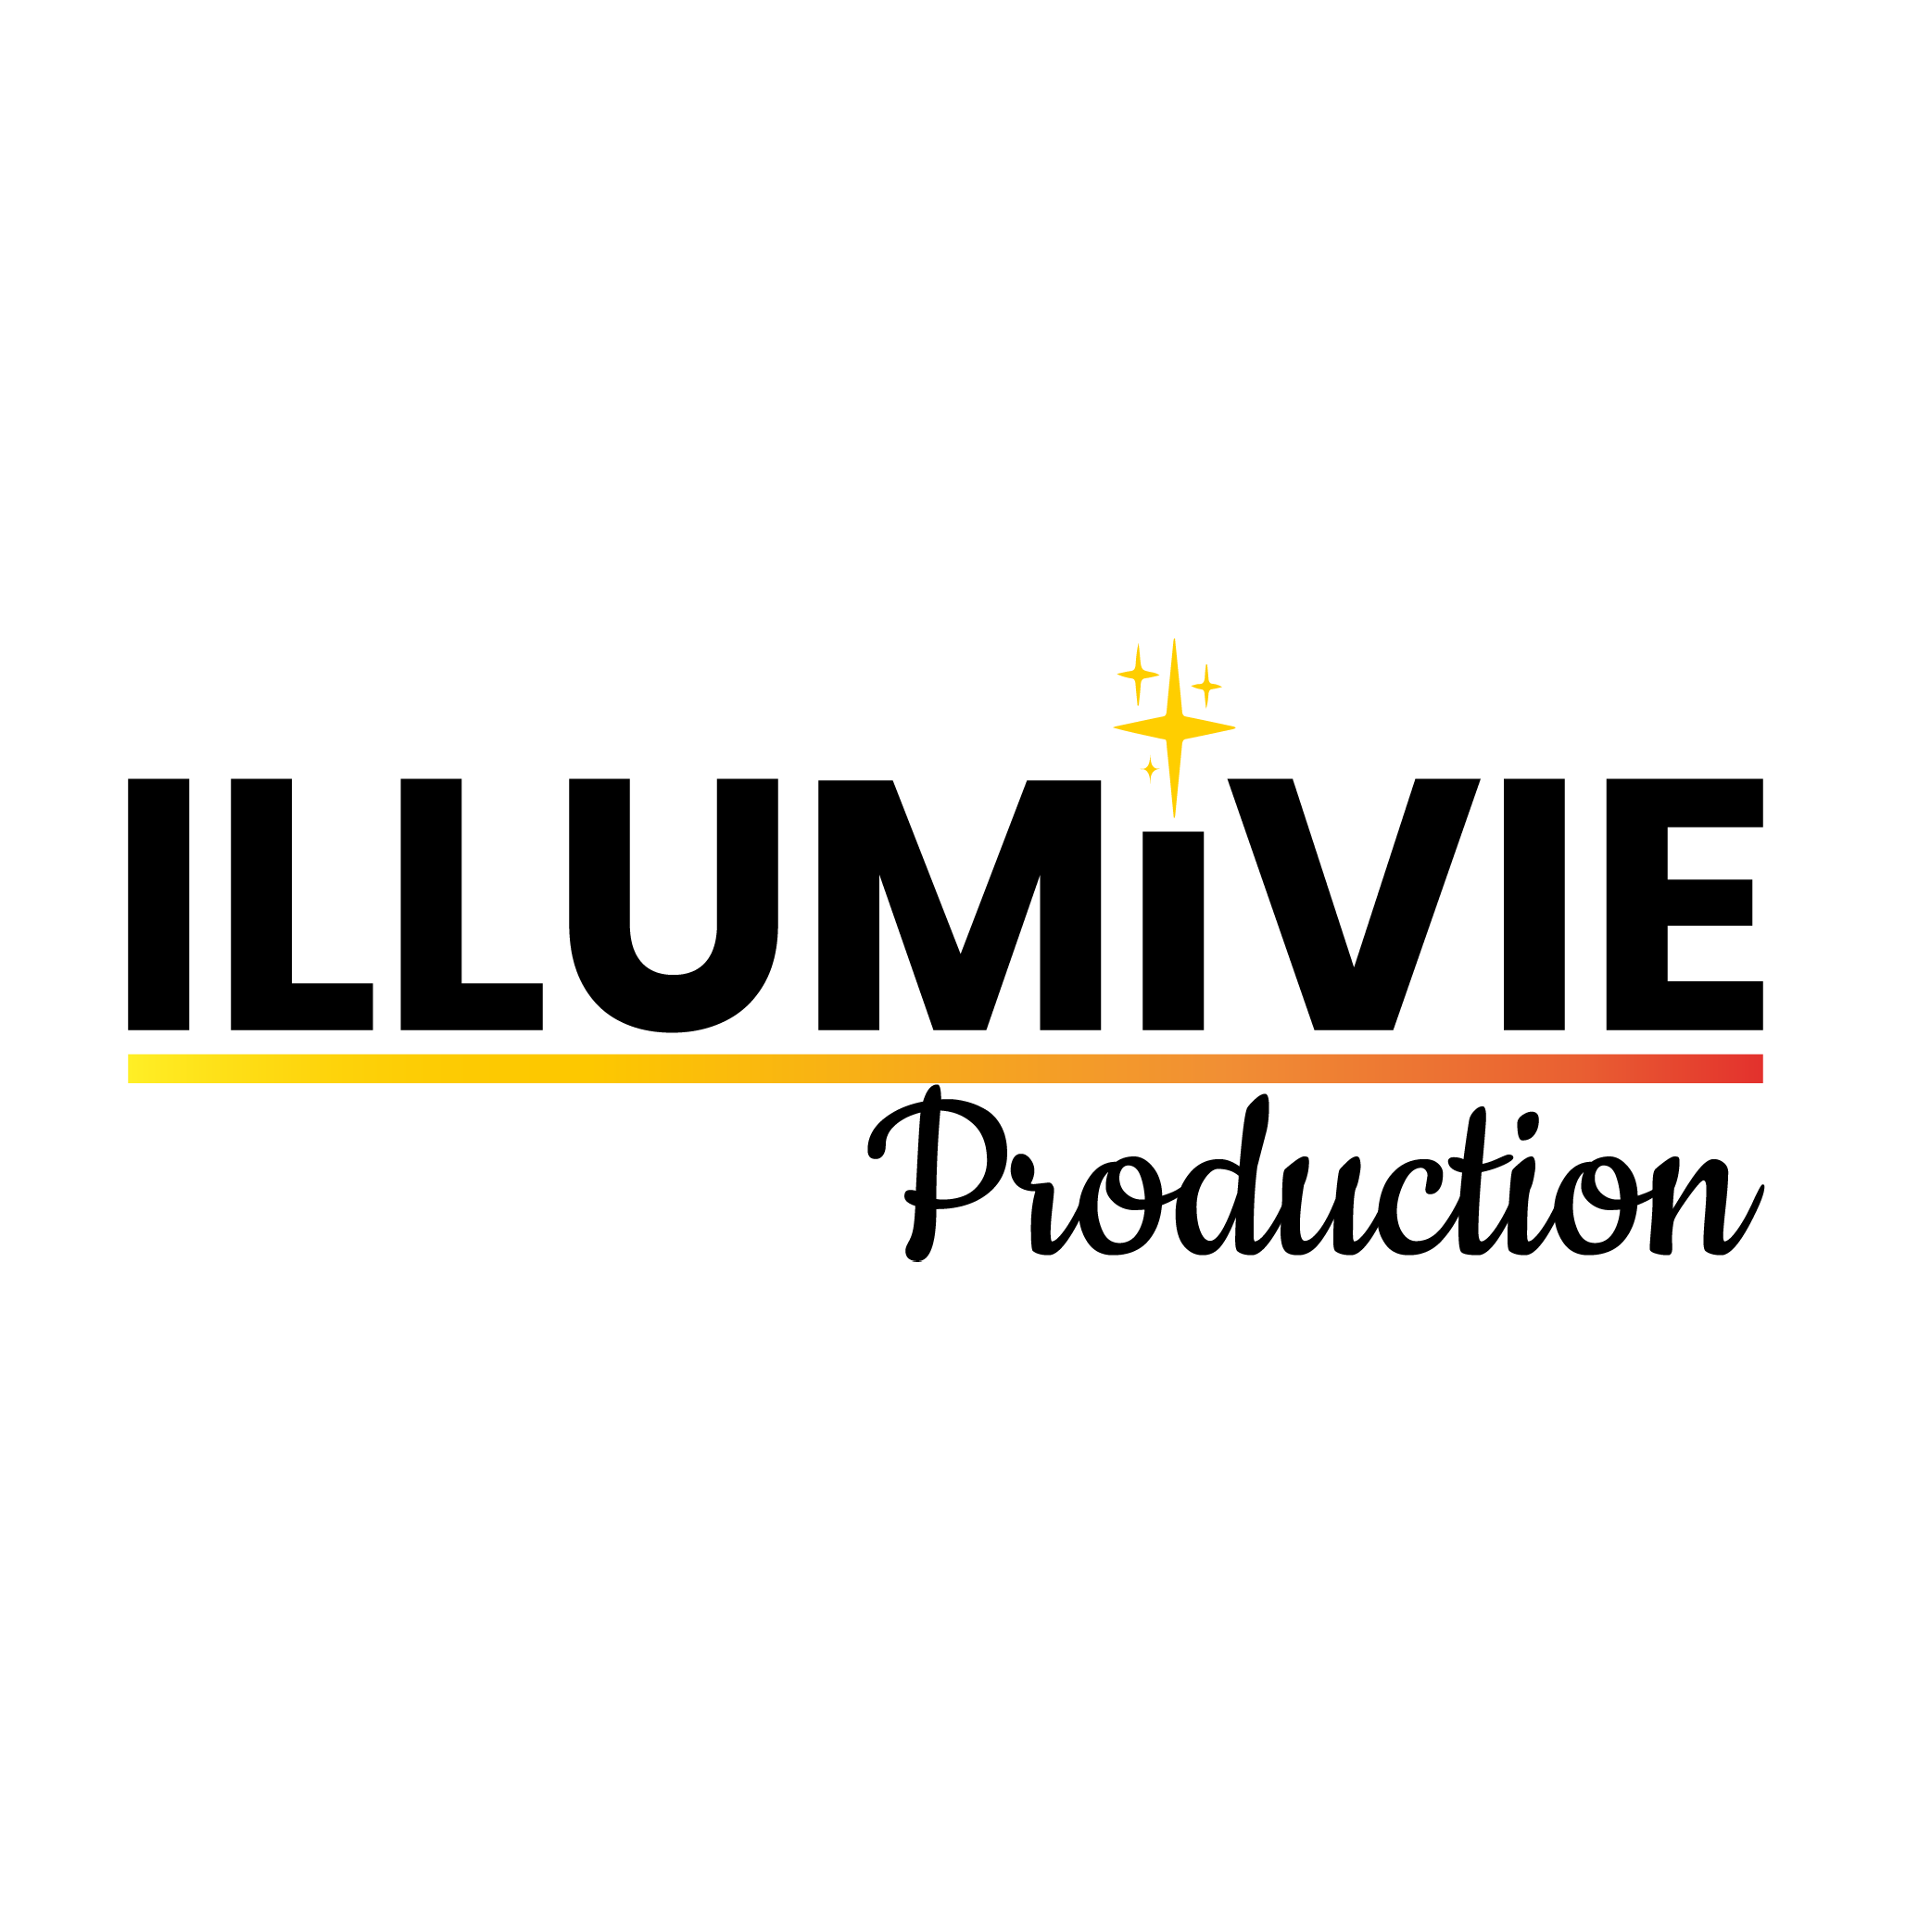 Logo Illumivie Production Hautes Alpes